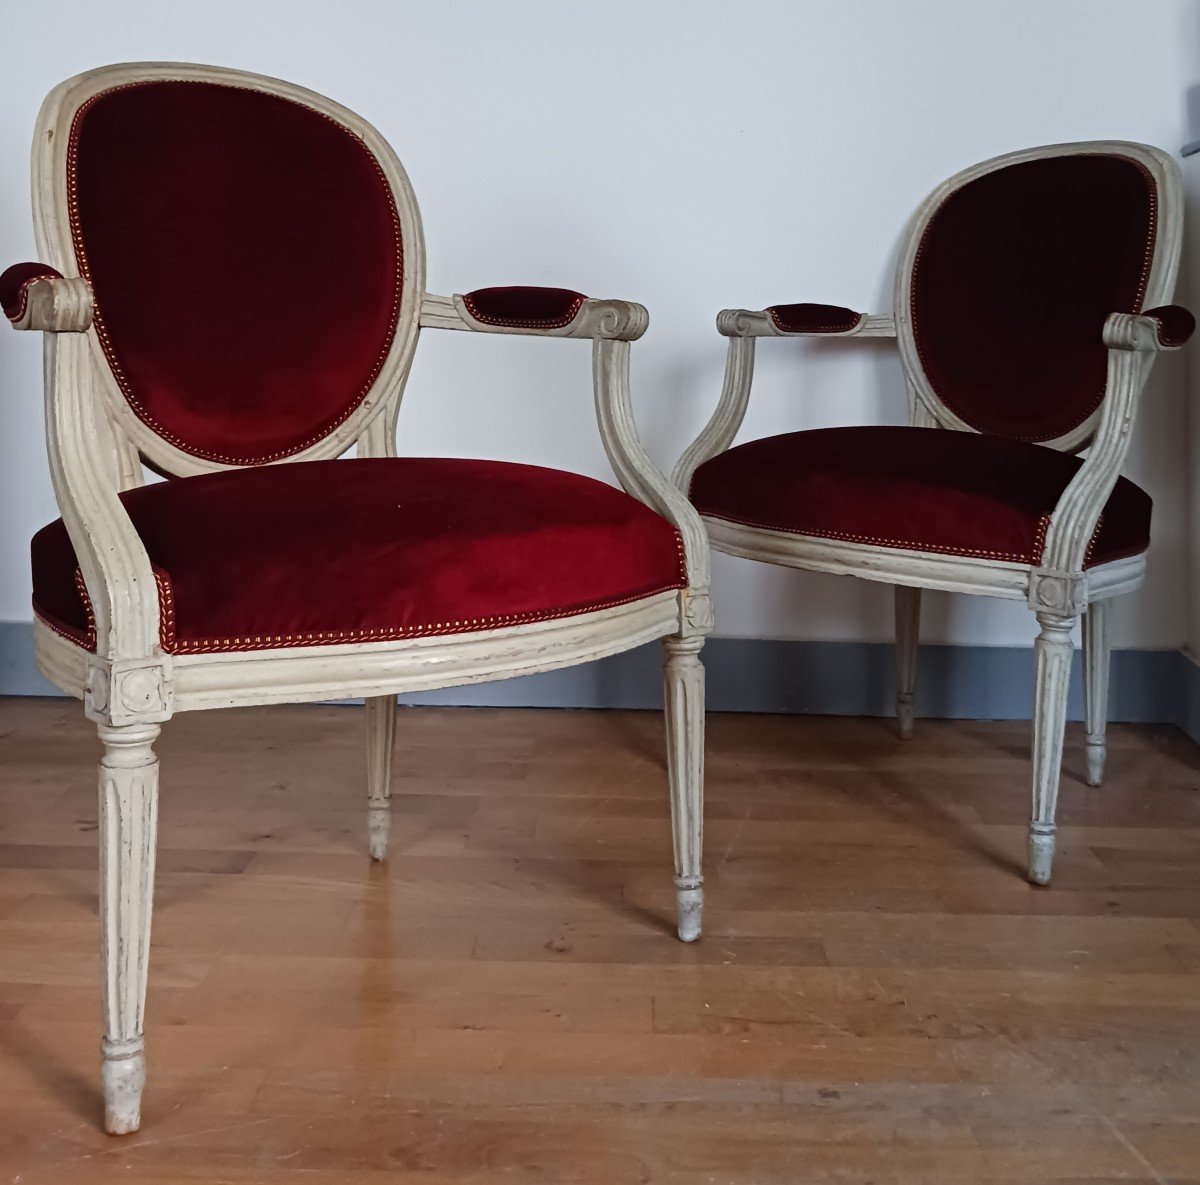 Claude Gorgu, maître en 1770 - paire de fauteuils en cabriolet - restaurés - velours jaspé - numéro d'inventaire-photo-3